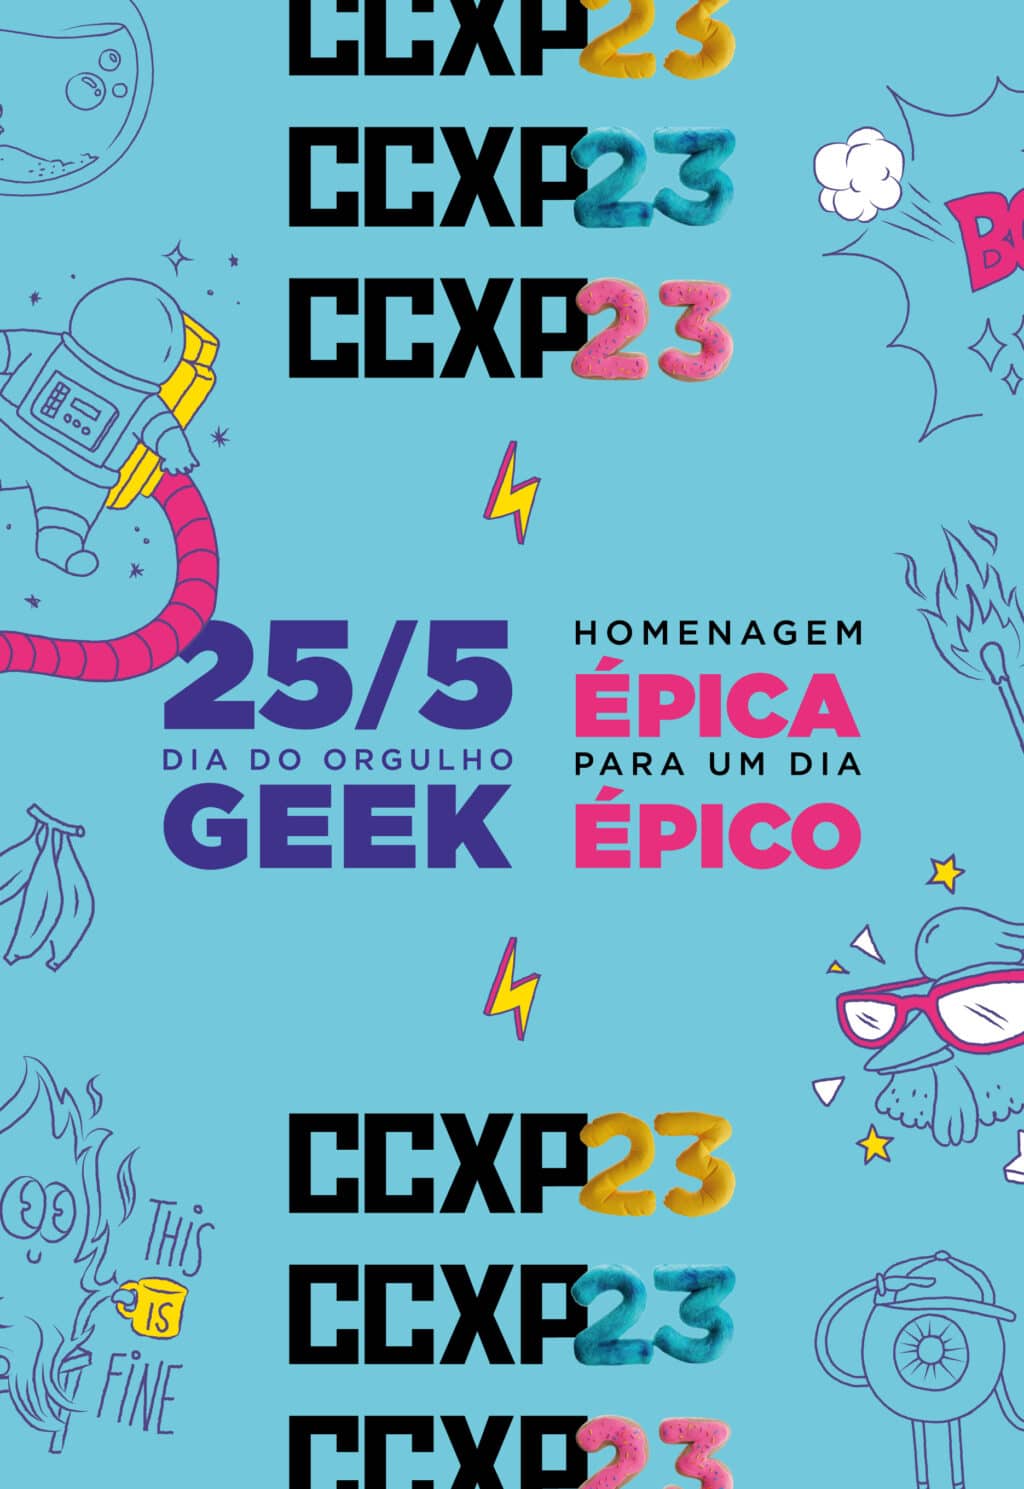 CCXP23 celebra o Dia do Orgulho Geek com lambe-lambes nas ruas de SP